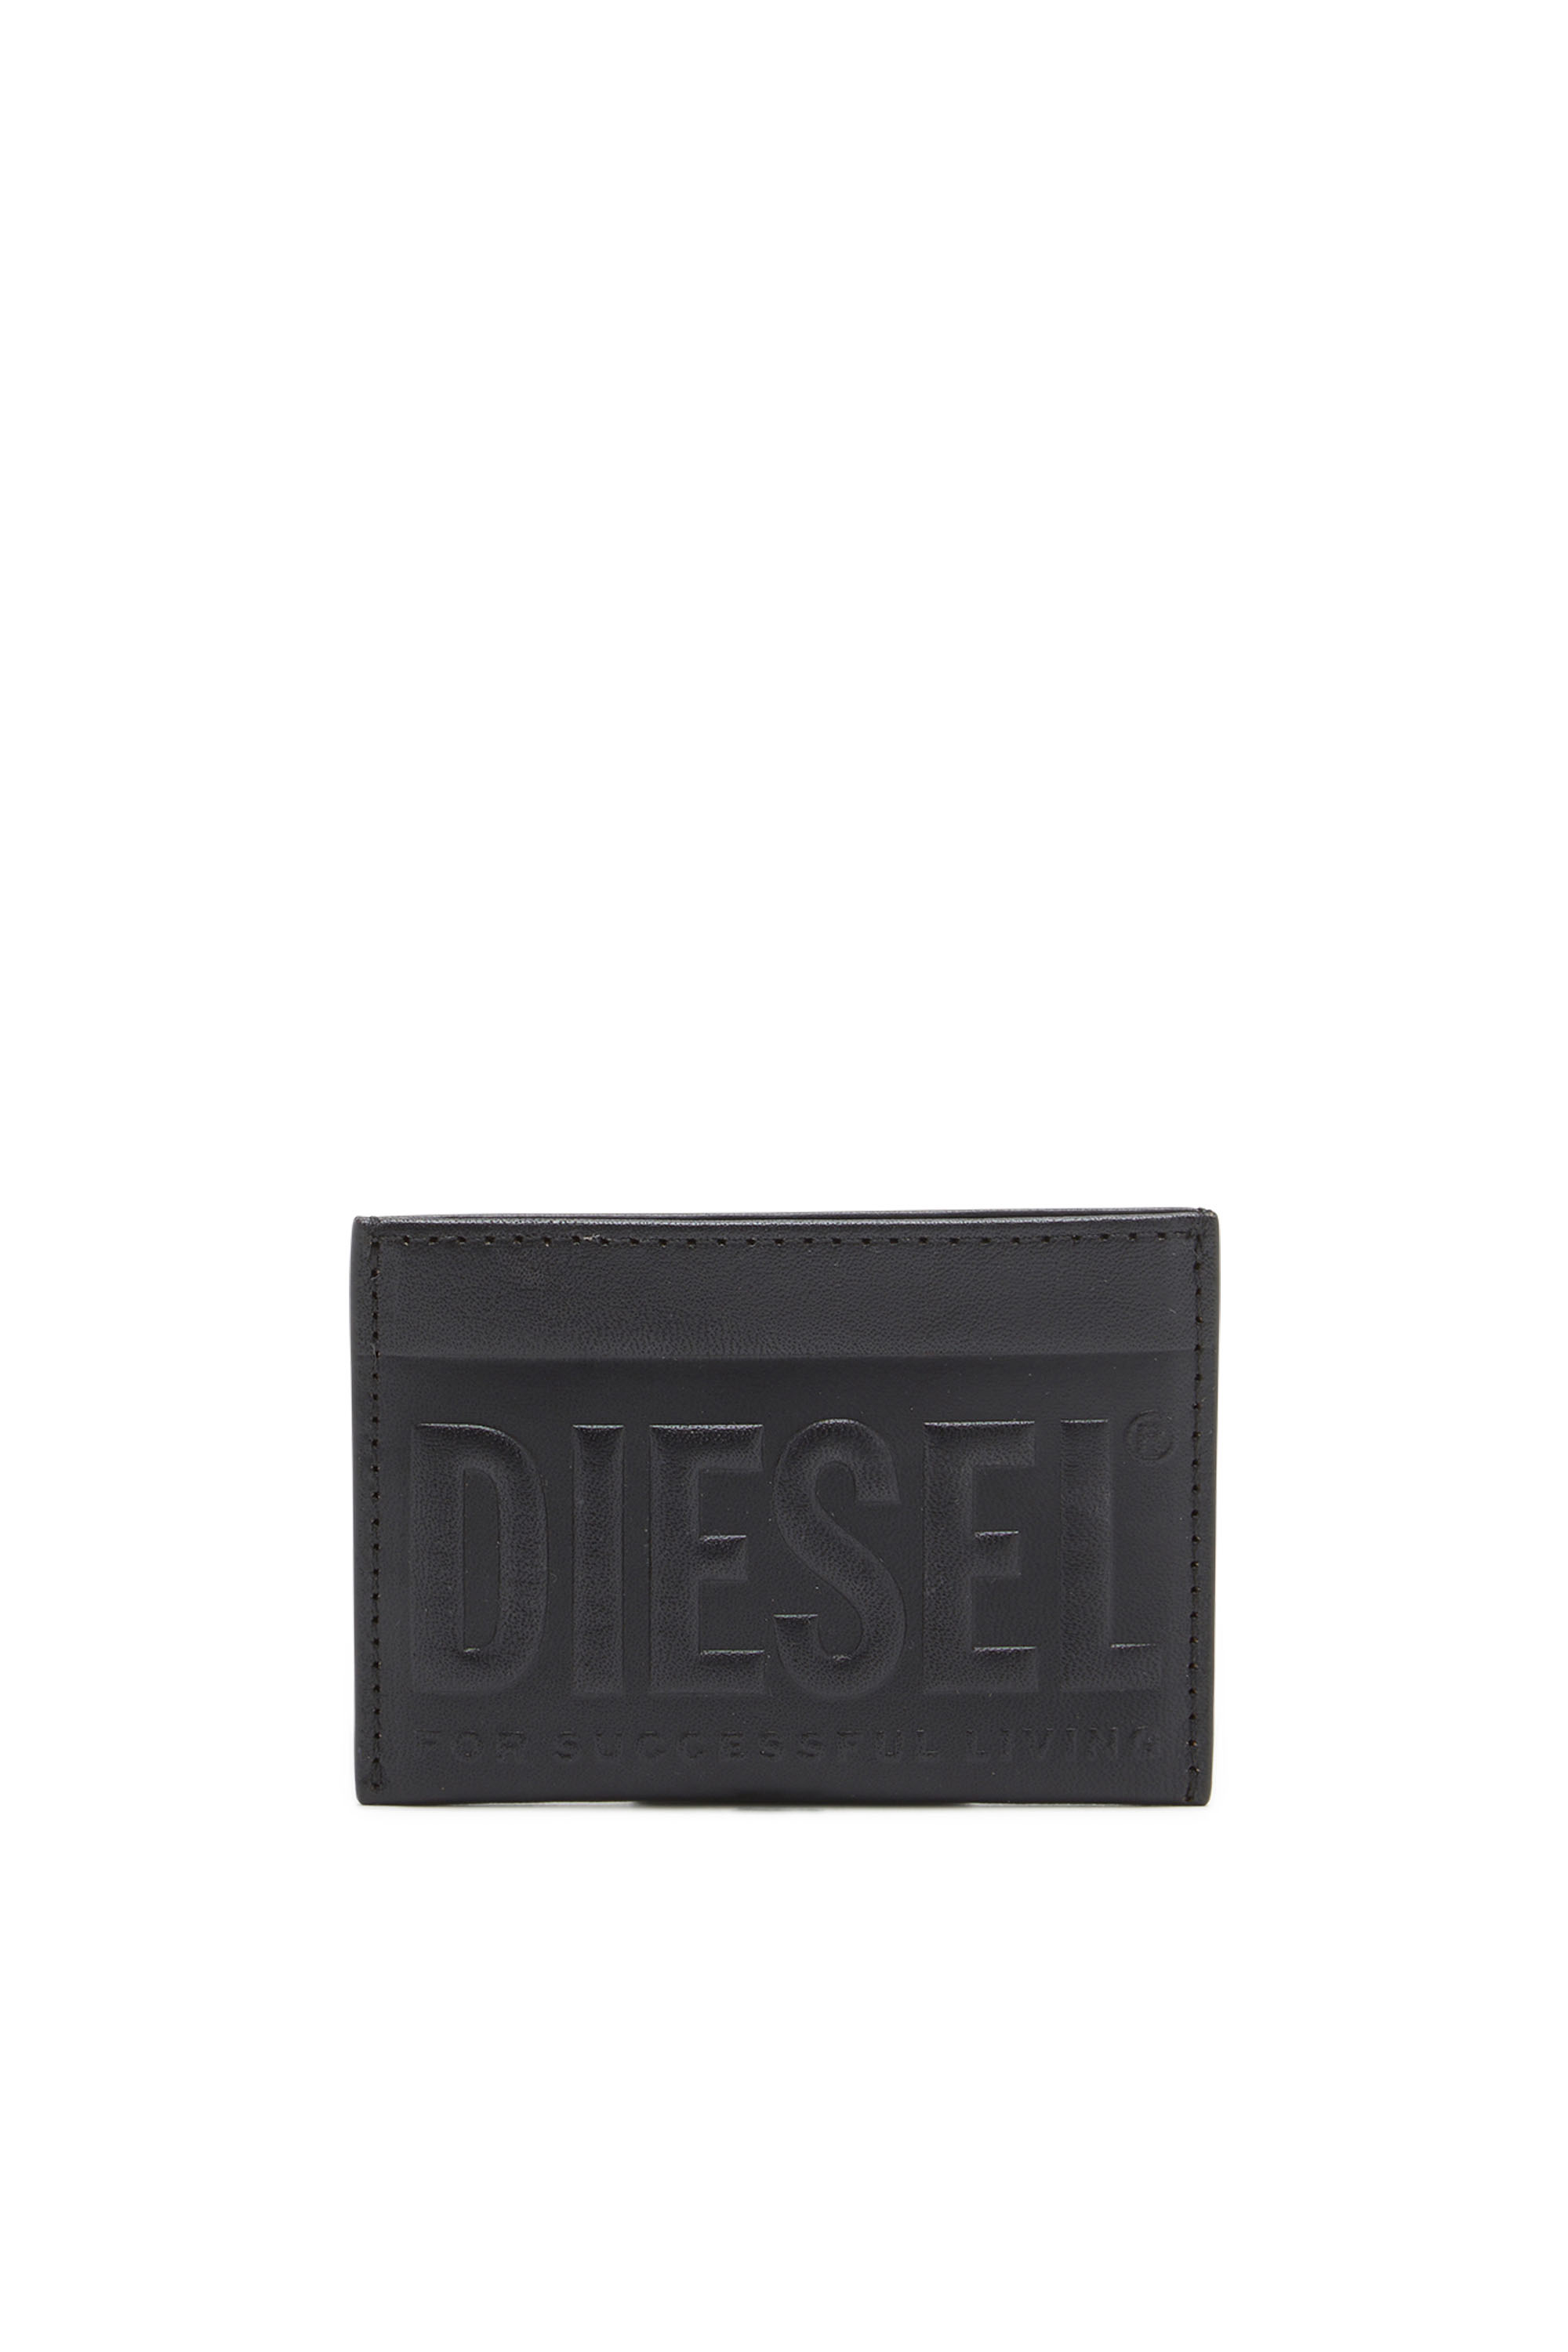 Diesel - Portacarte in pelle con logo 3D - Portafogli Piccoli - Uomo - Nero